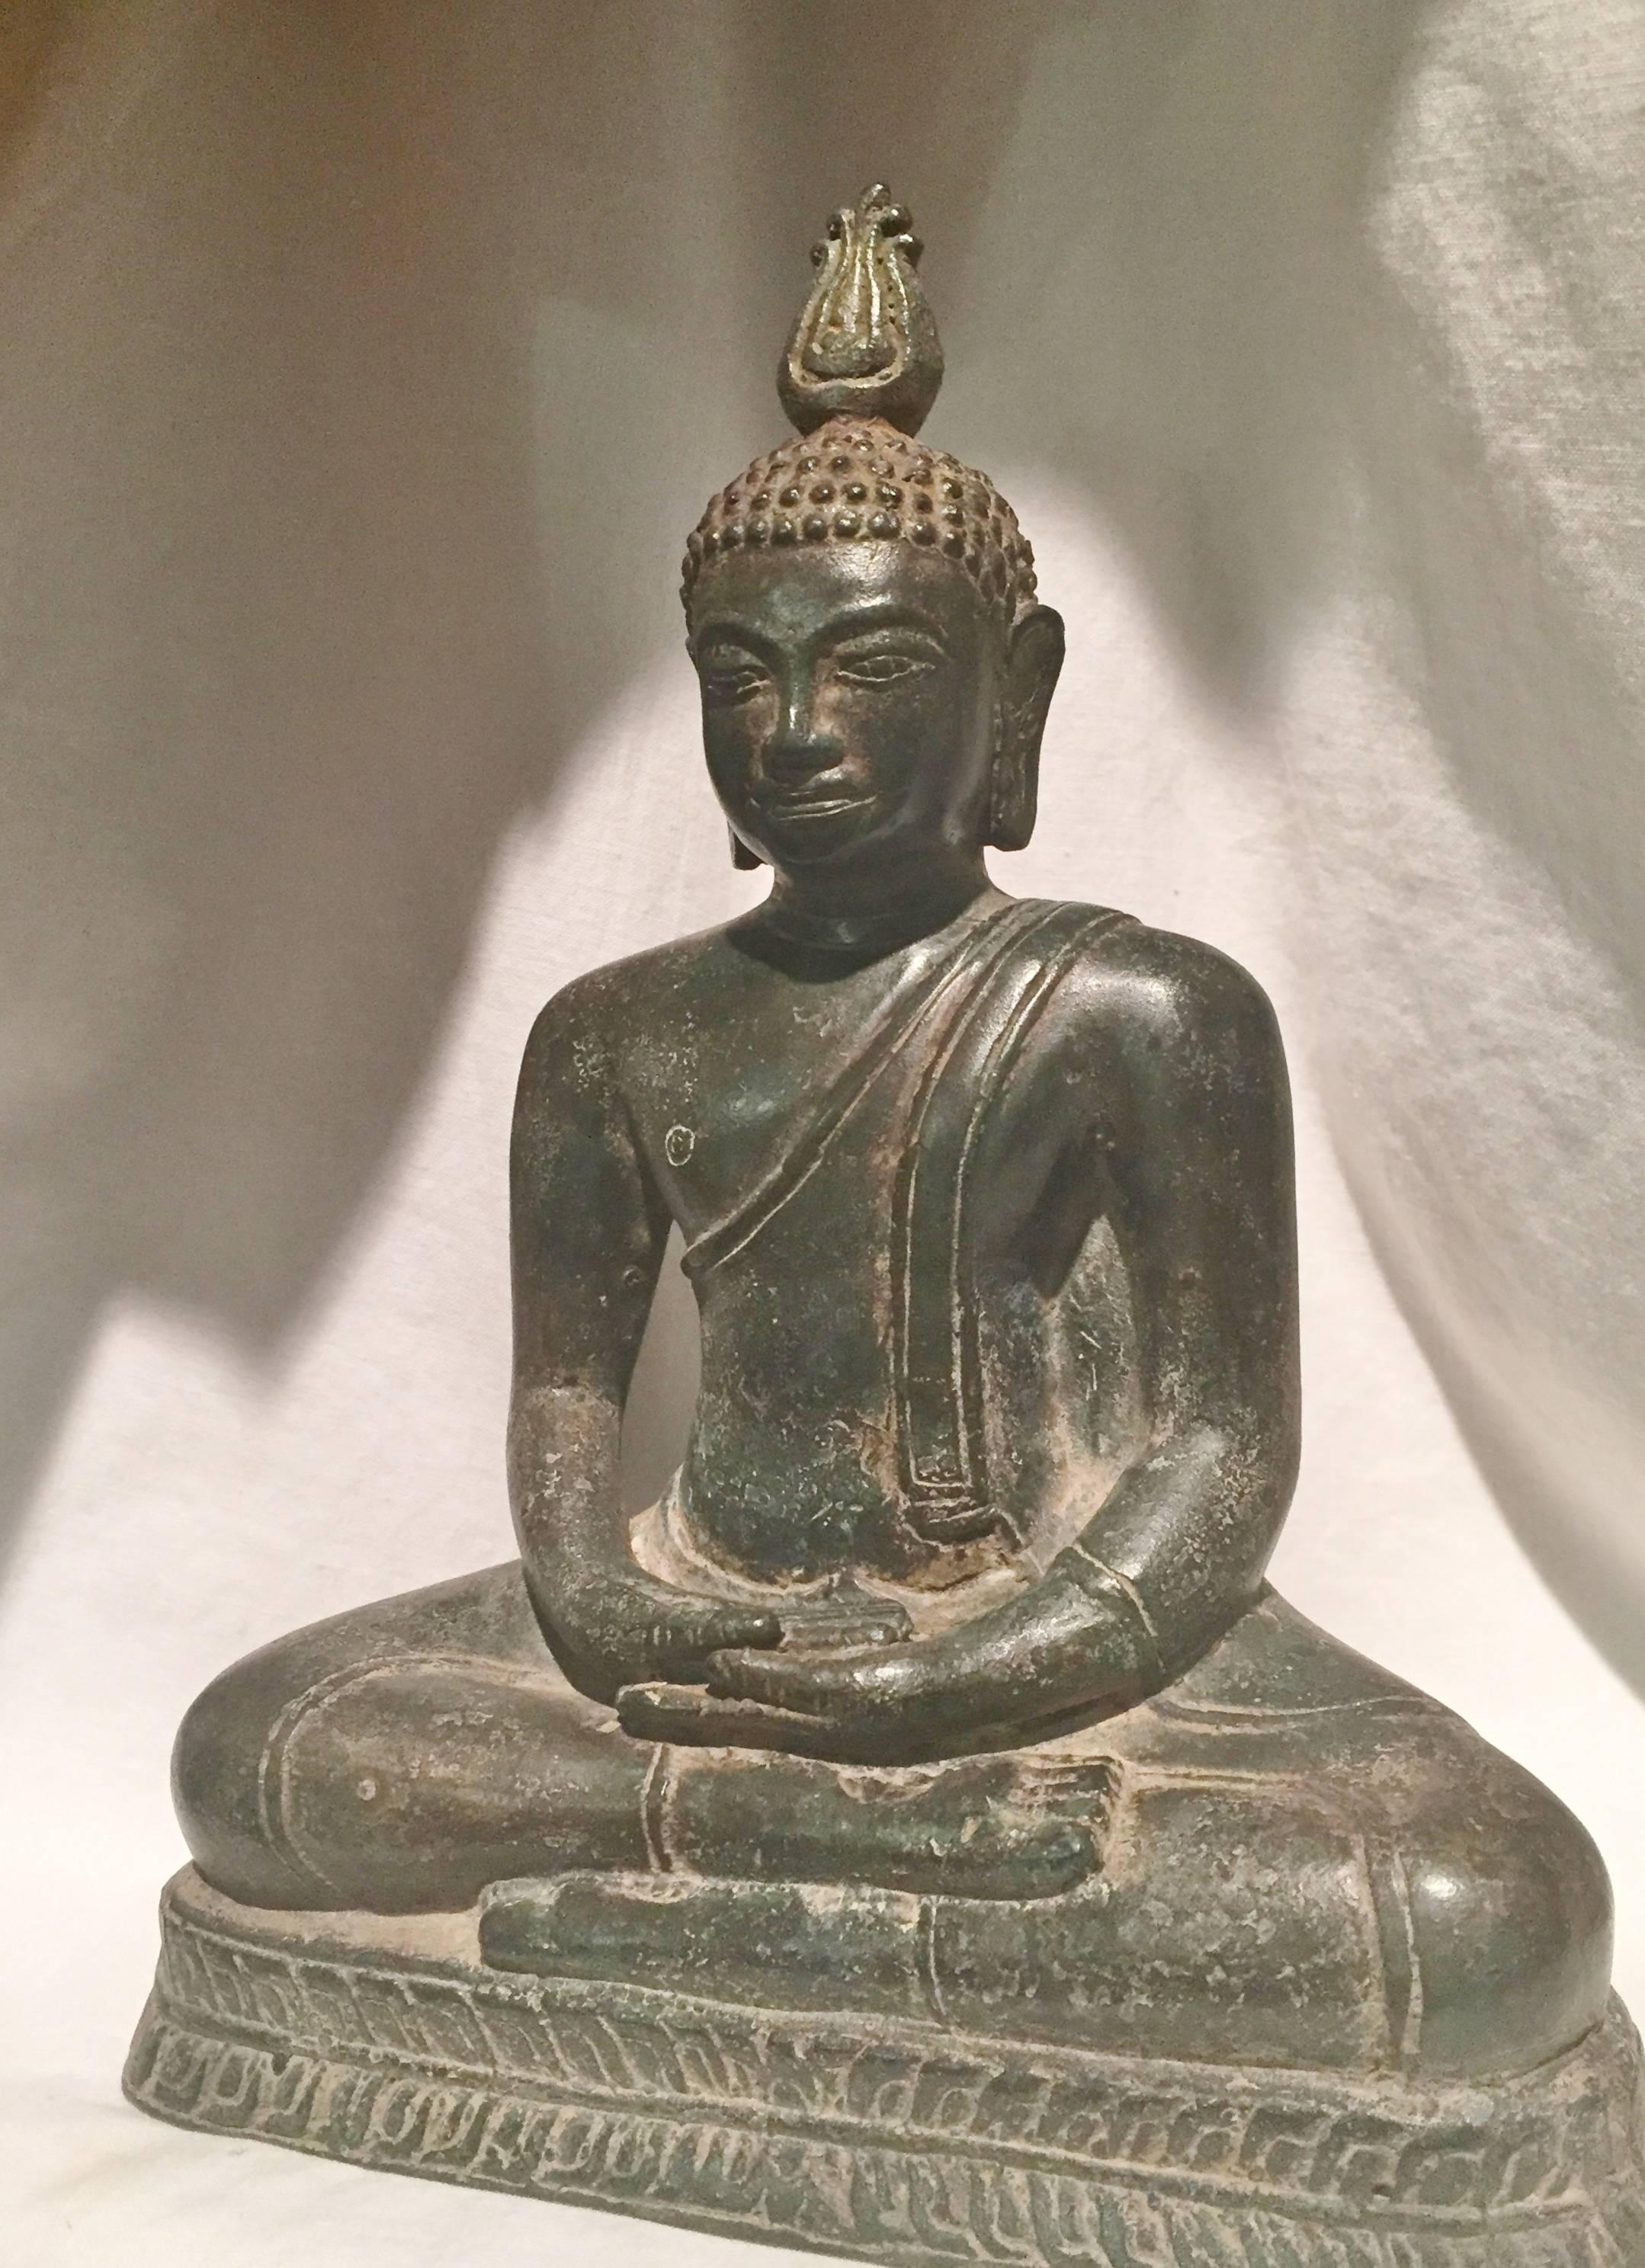 Ein sehr seltenes Stück aus dem Königreich Kandy:: einer unabhängigen Monarchie der Insel Lanka:: die im späten 15. Jahrhundert gegründet wurde und bis ins frühe 19. Jahrhundert bestand. 

Dieses Werk repräsentiert den Stil der Buddha-Darstellung